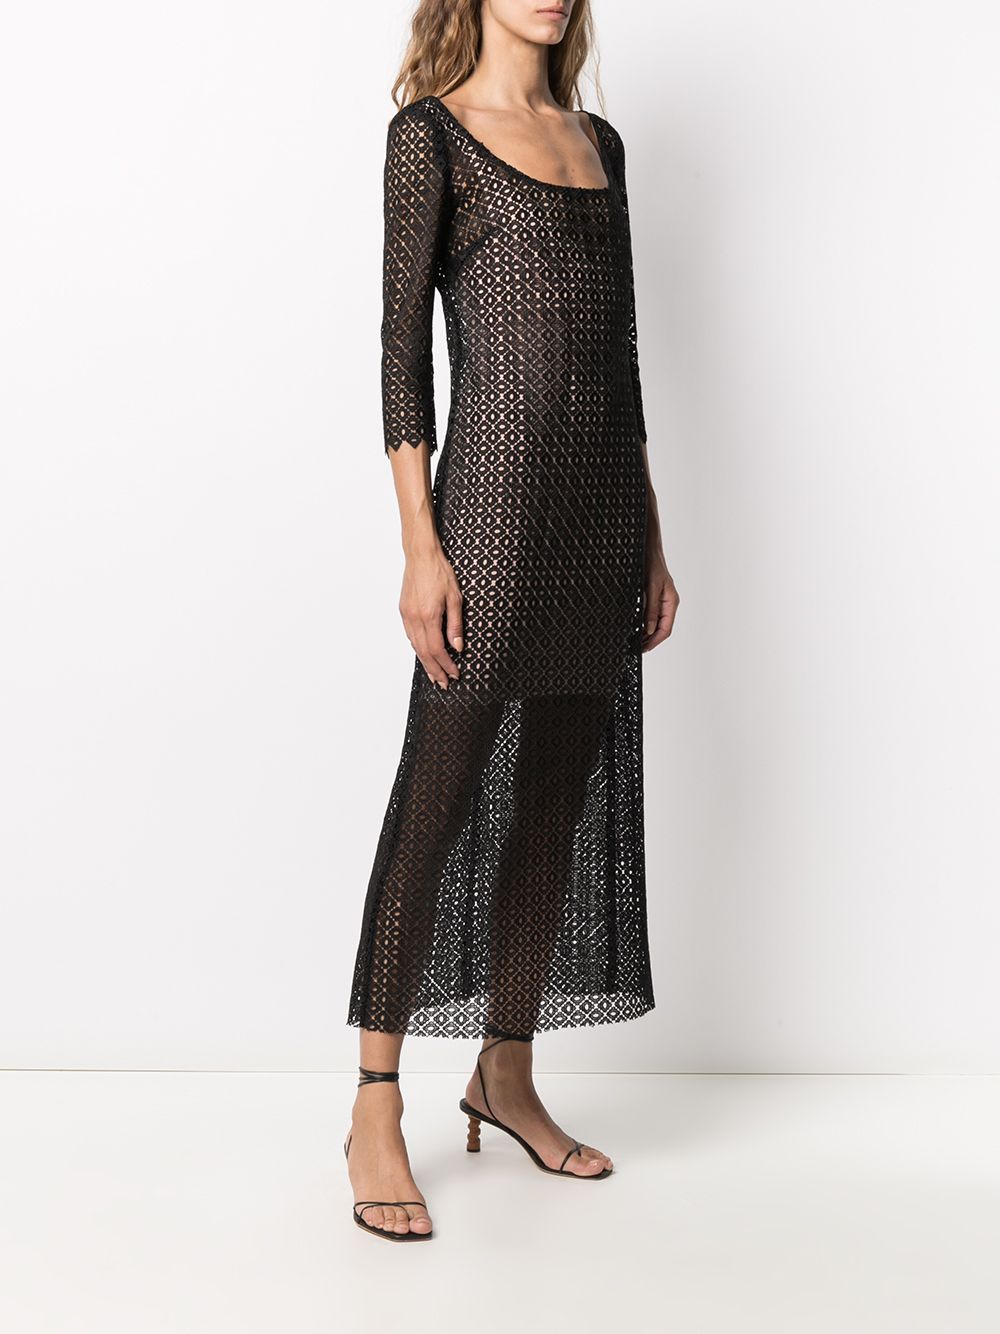 фото Antonella rizza платье макси с геометричным узором